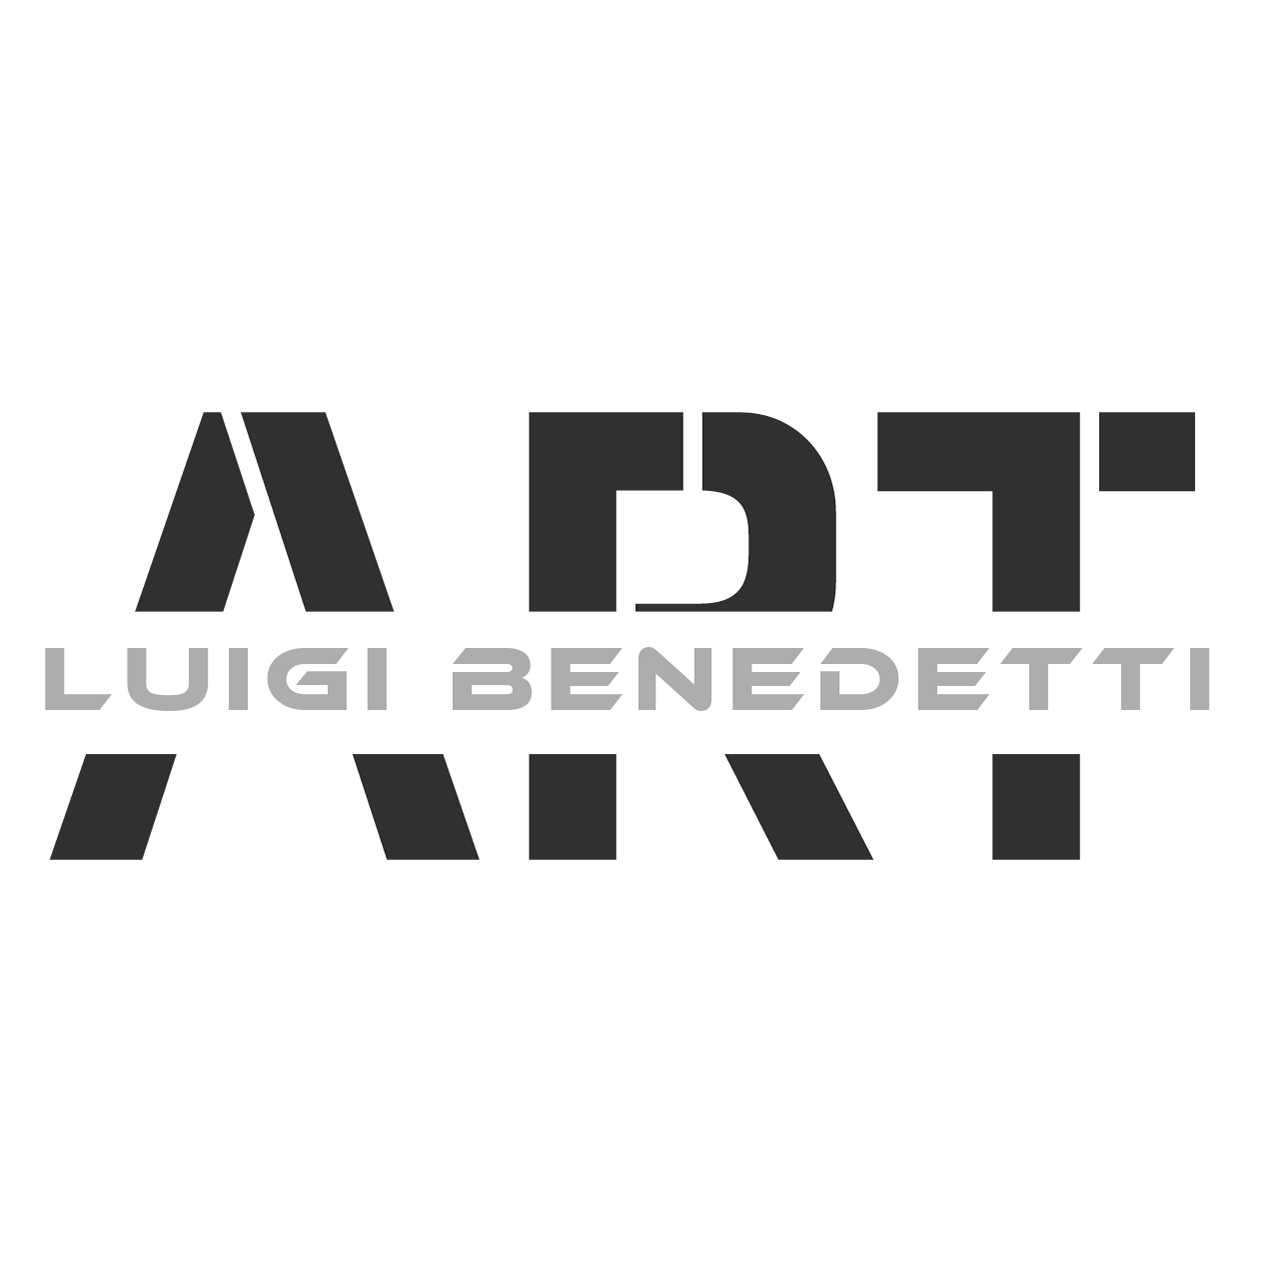 Luigi Benedetti